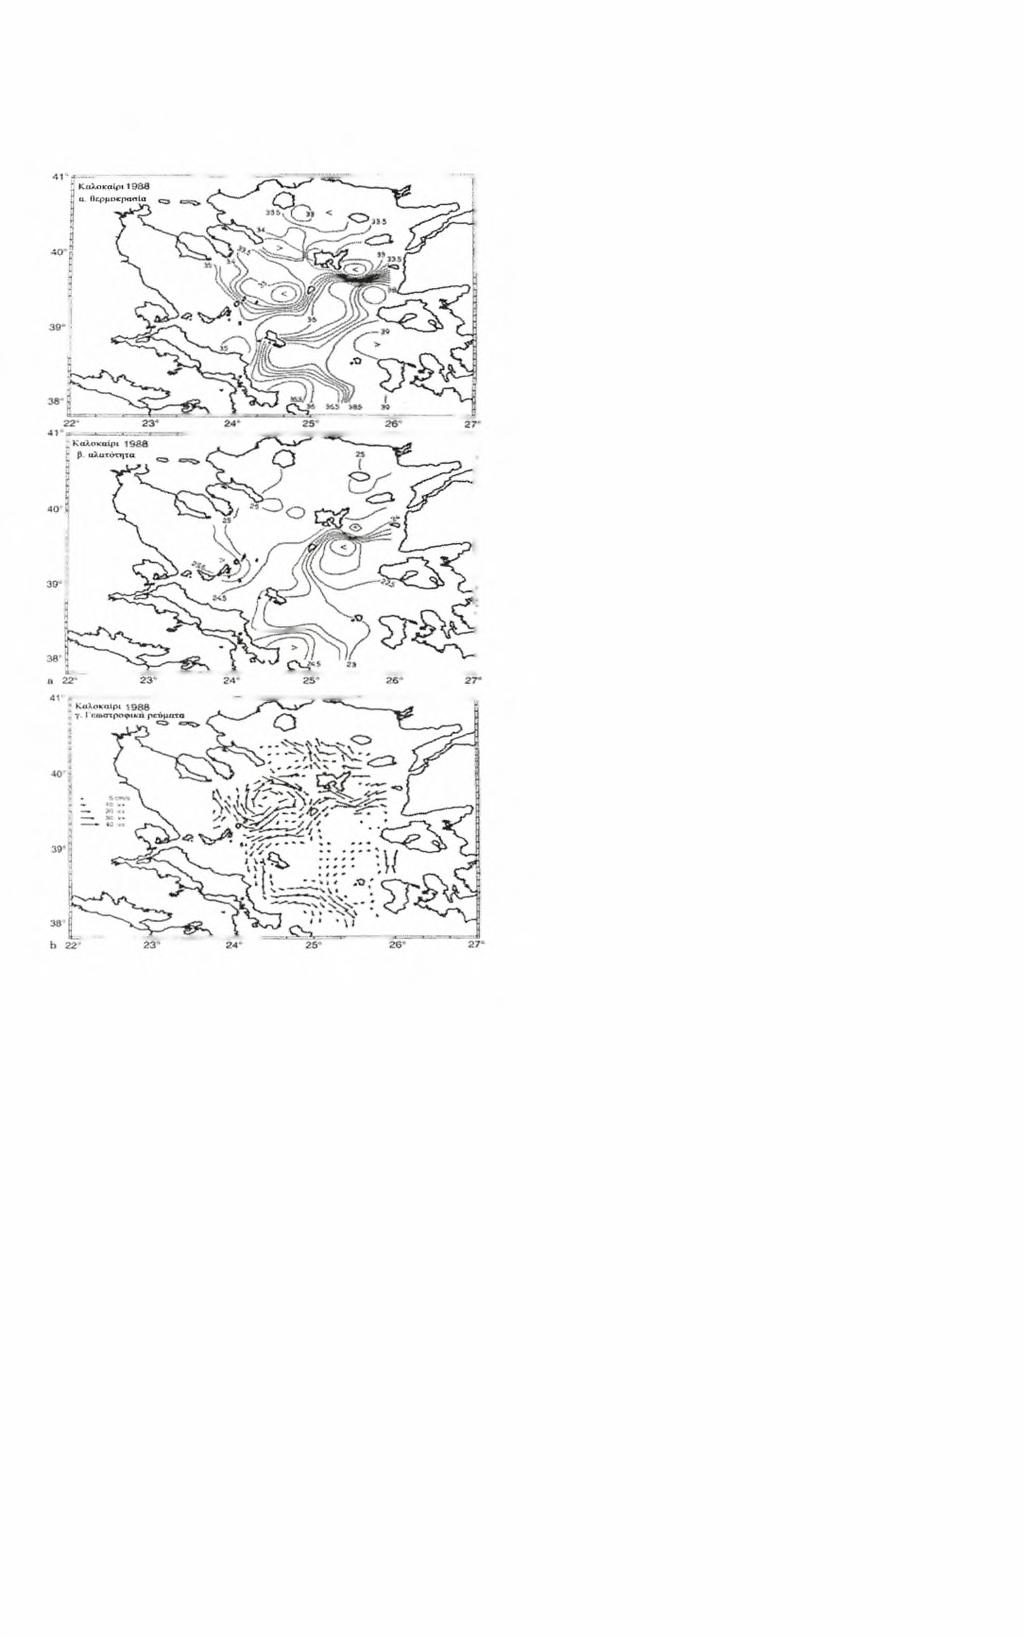 Σχ.9 α οριζόντια κατανομή επιφανειακής αλατότητας ως ιχνηλάτης του Νερού της Μαύρης Θάλασσας (Zodiatis and Balopoulos, 1993), και θερμοκρασίας,